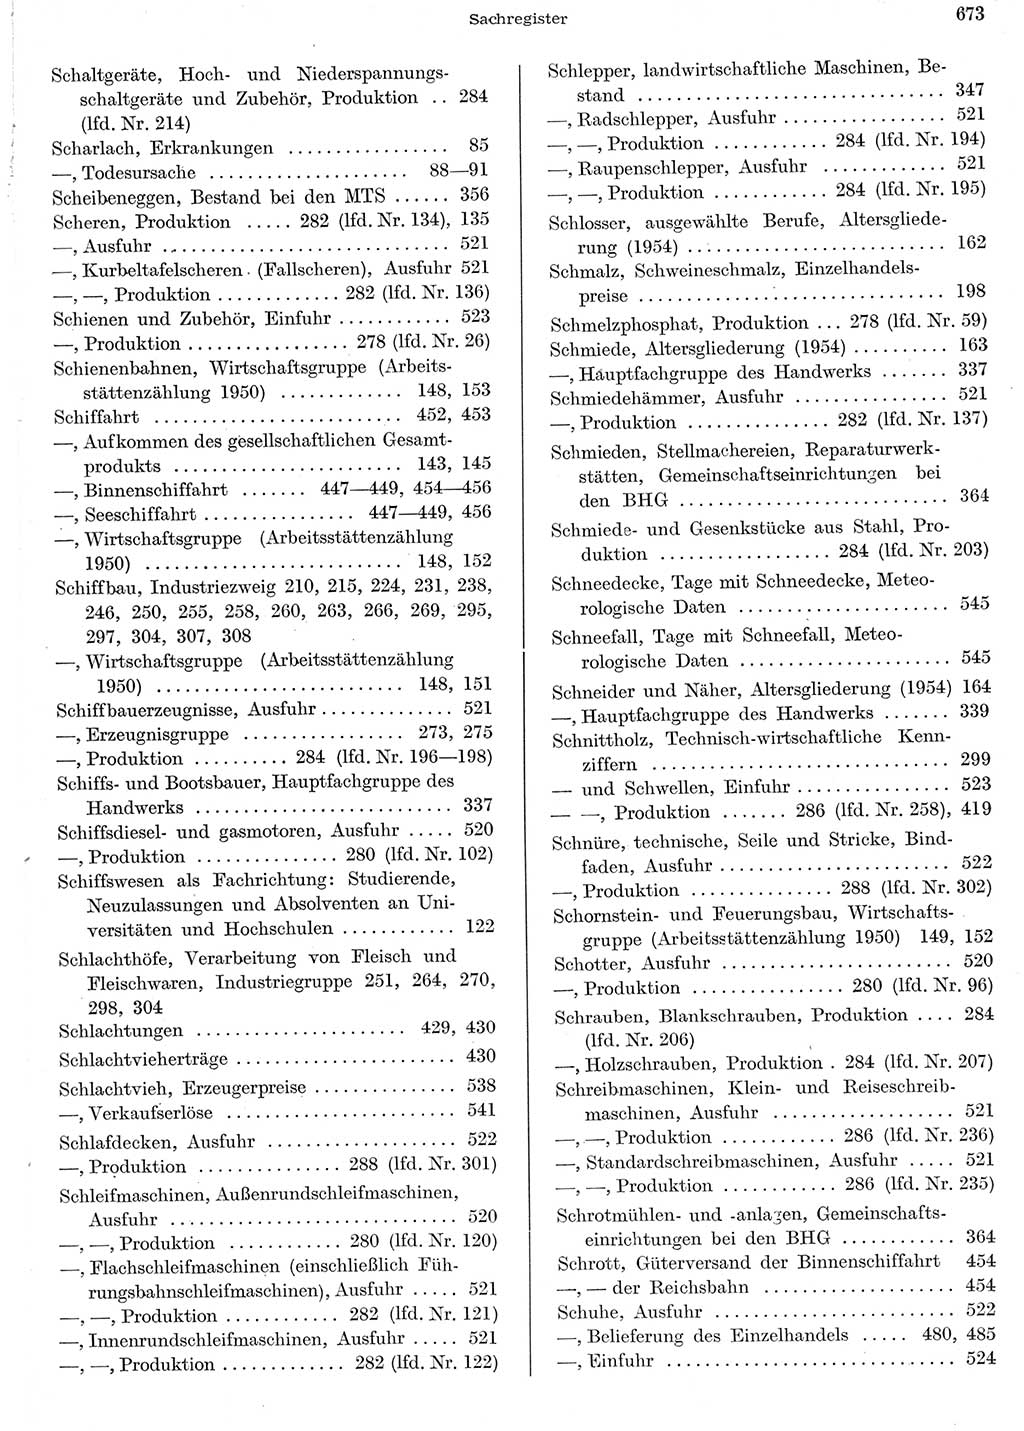 Statistisches Jahrbuch der Deutschen Demokratischen Republik (DDR) 1956, Seite 673 (Stat. Jb. DDR 1956, S. 673)